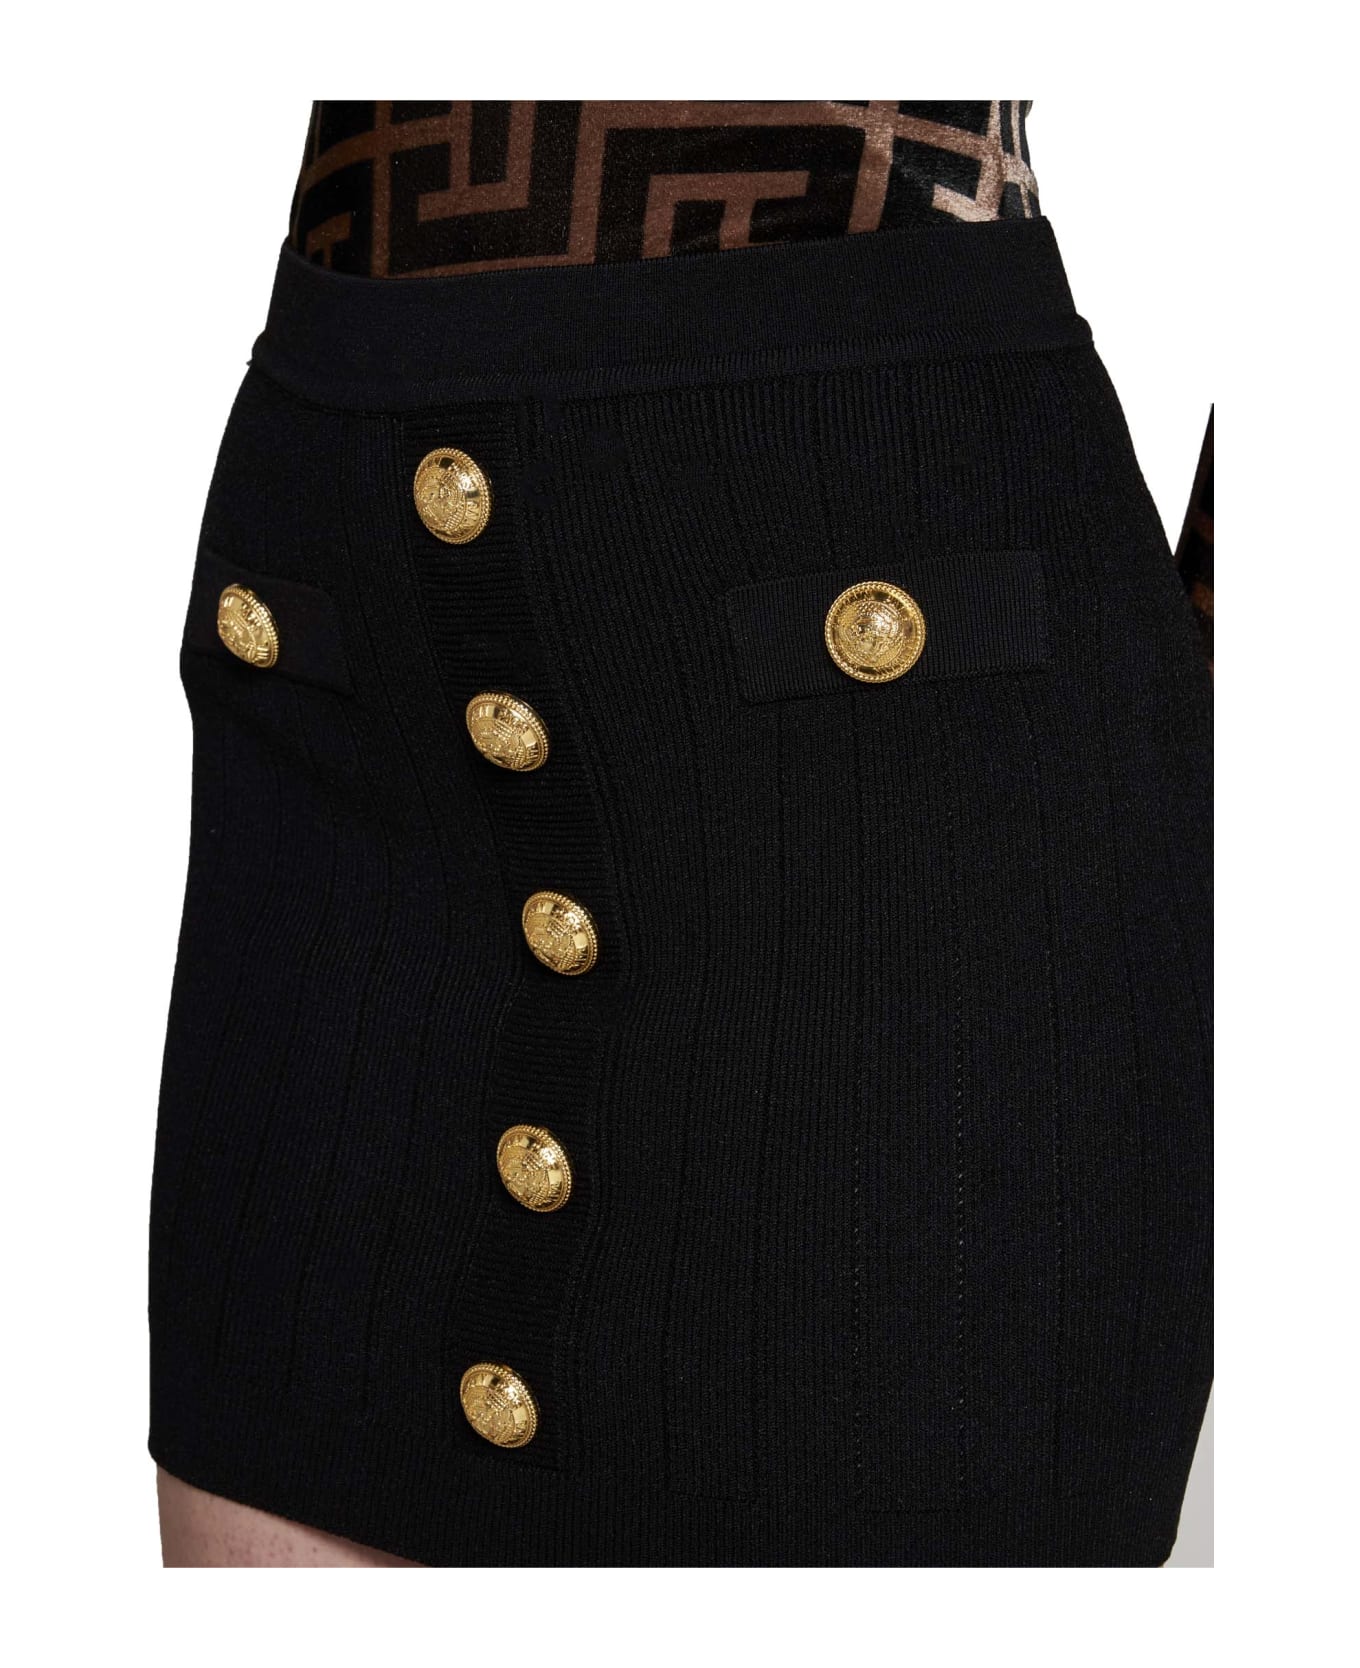 Balmain Skirt - Noir